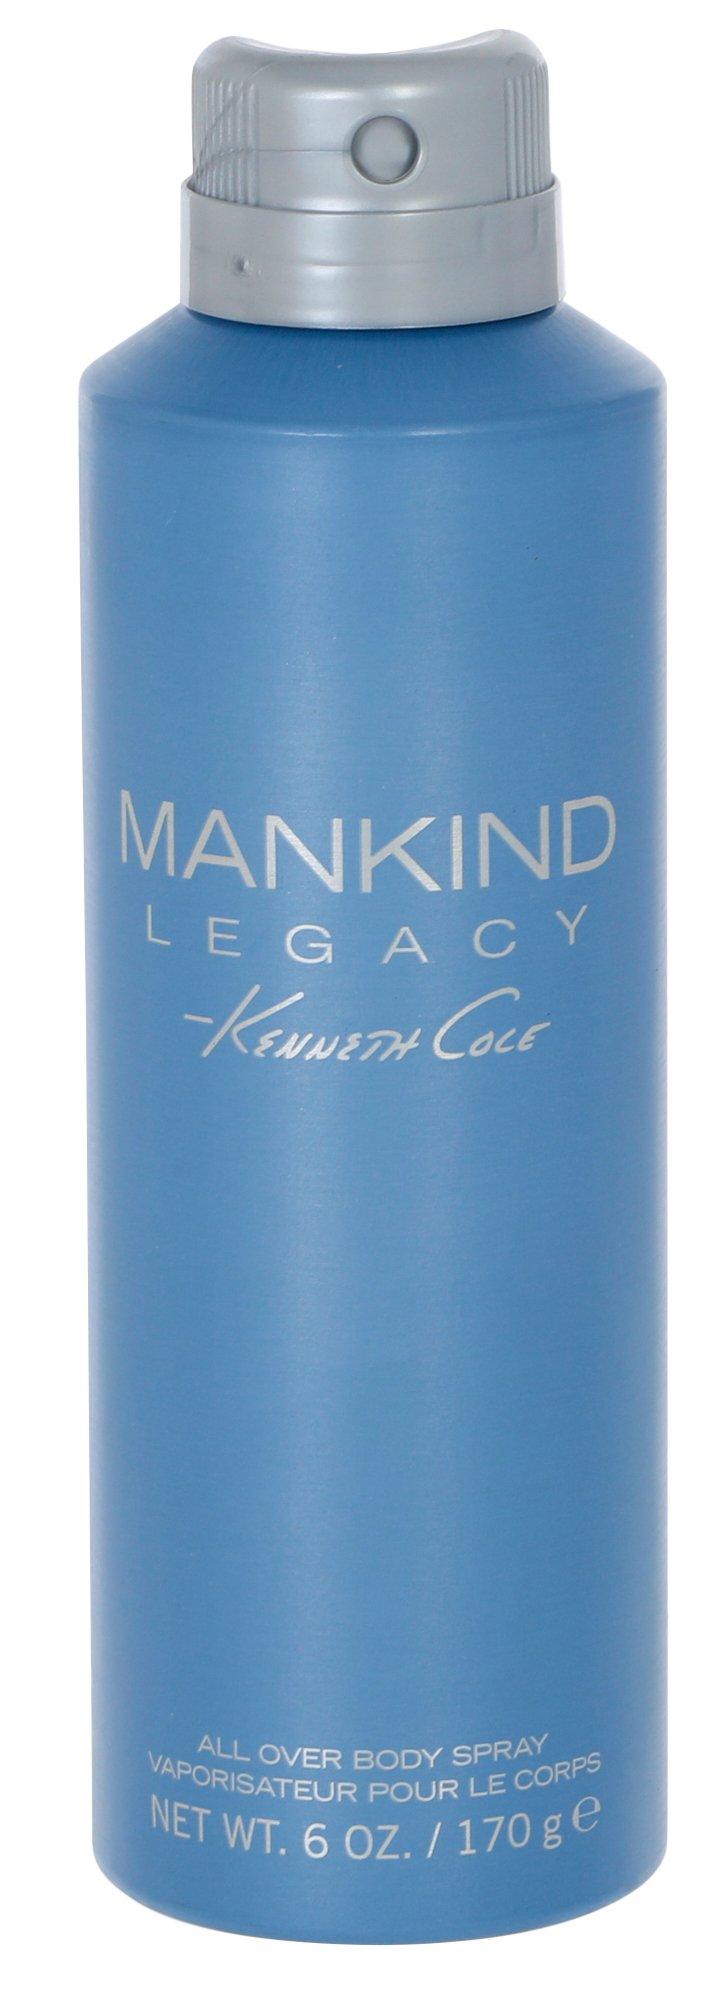 6.0 oz Mankind Legacy Body Spray For Him